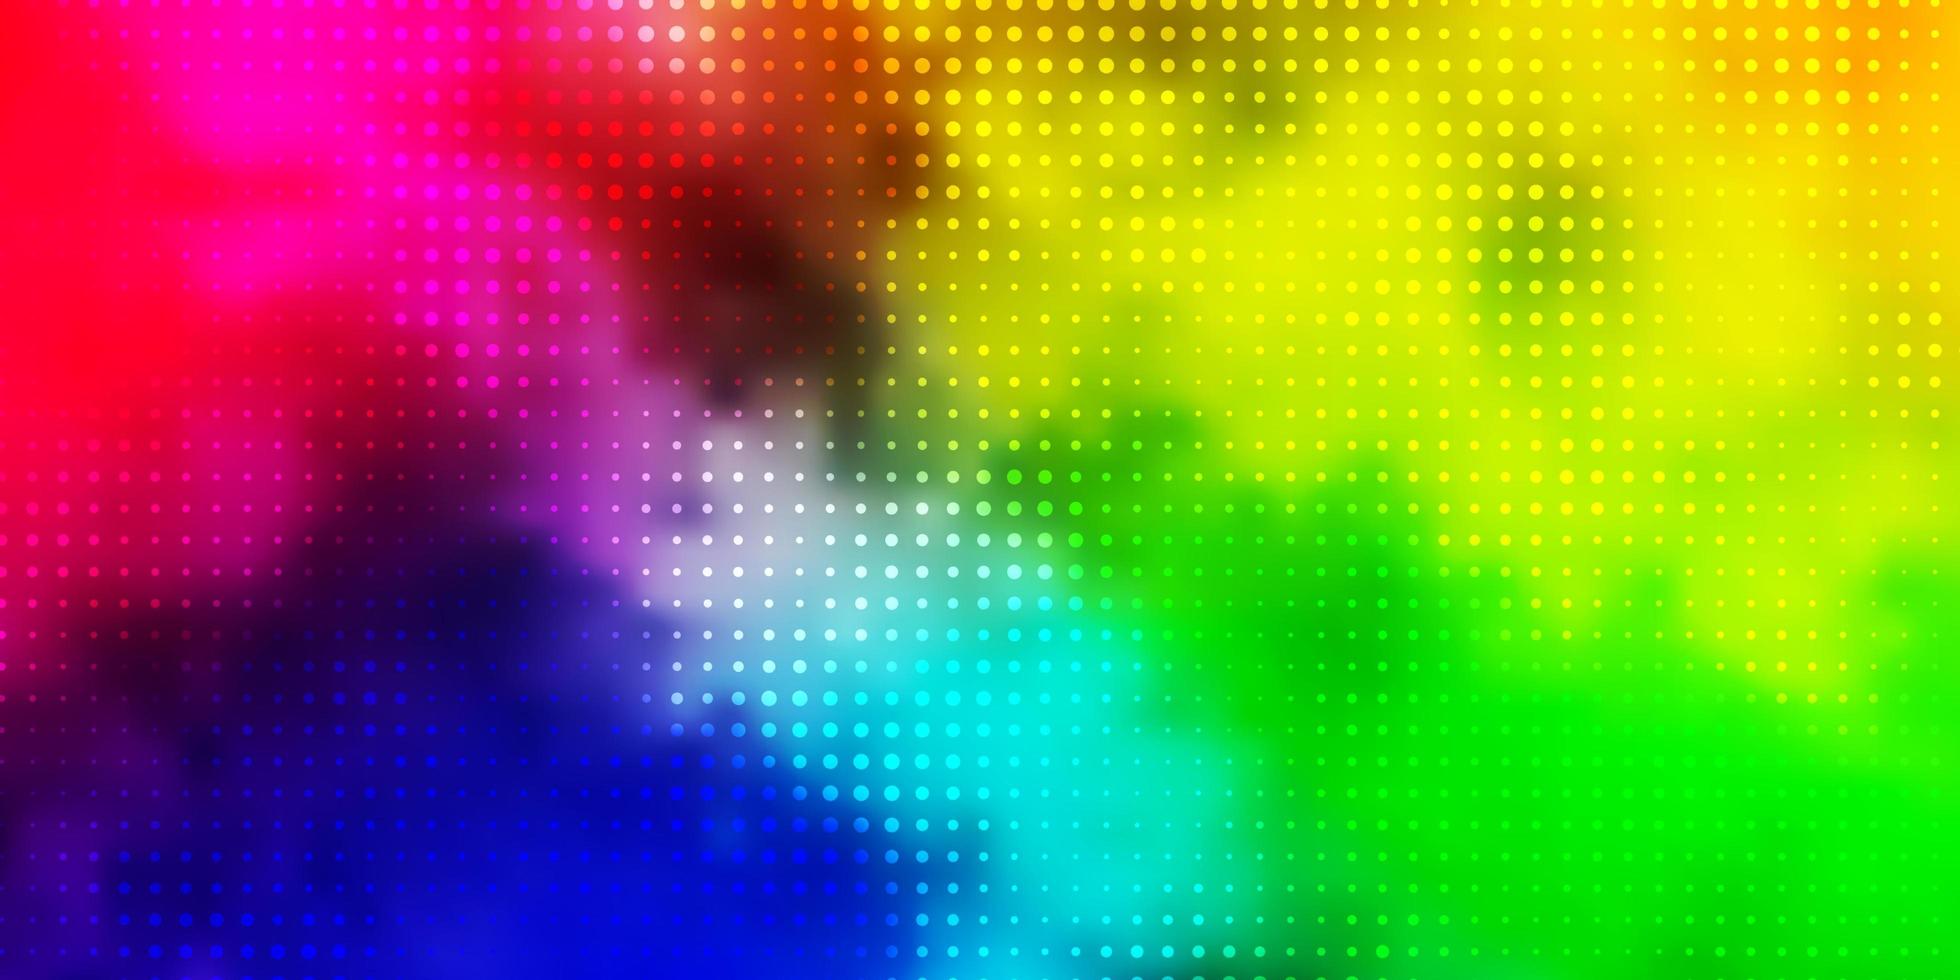 luz de fundo vector multicolor com bolhas.